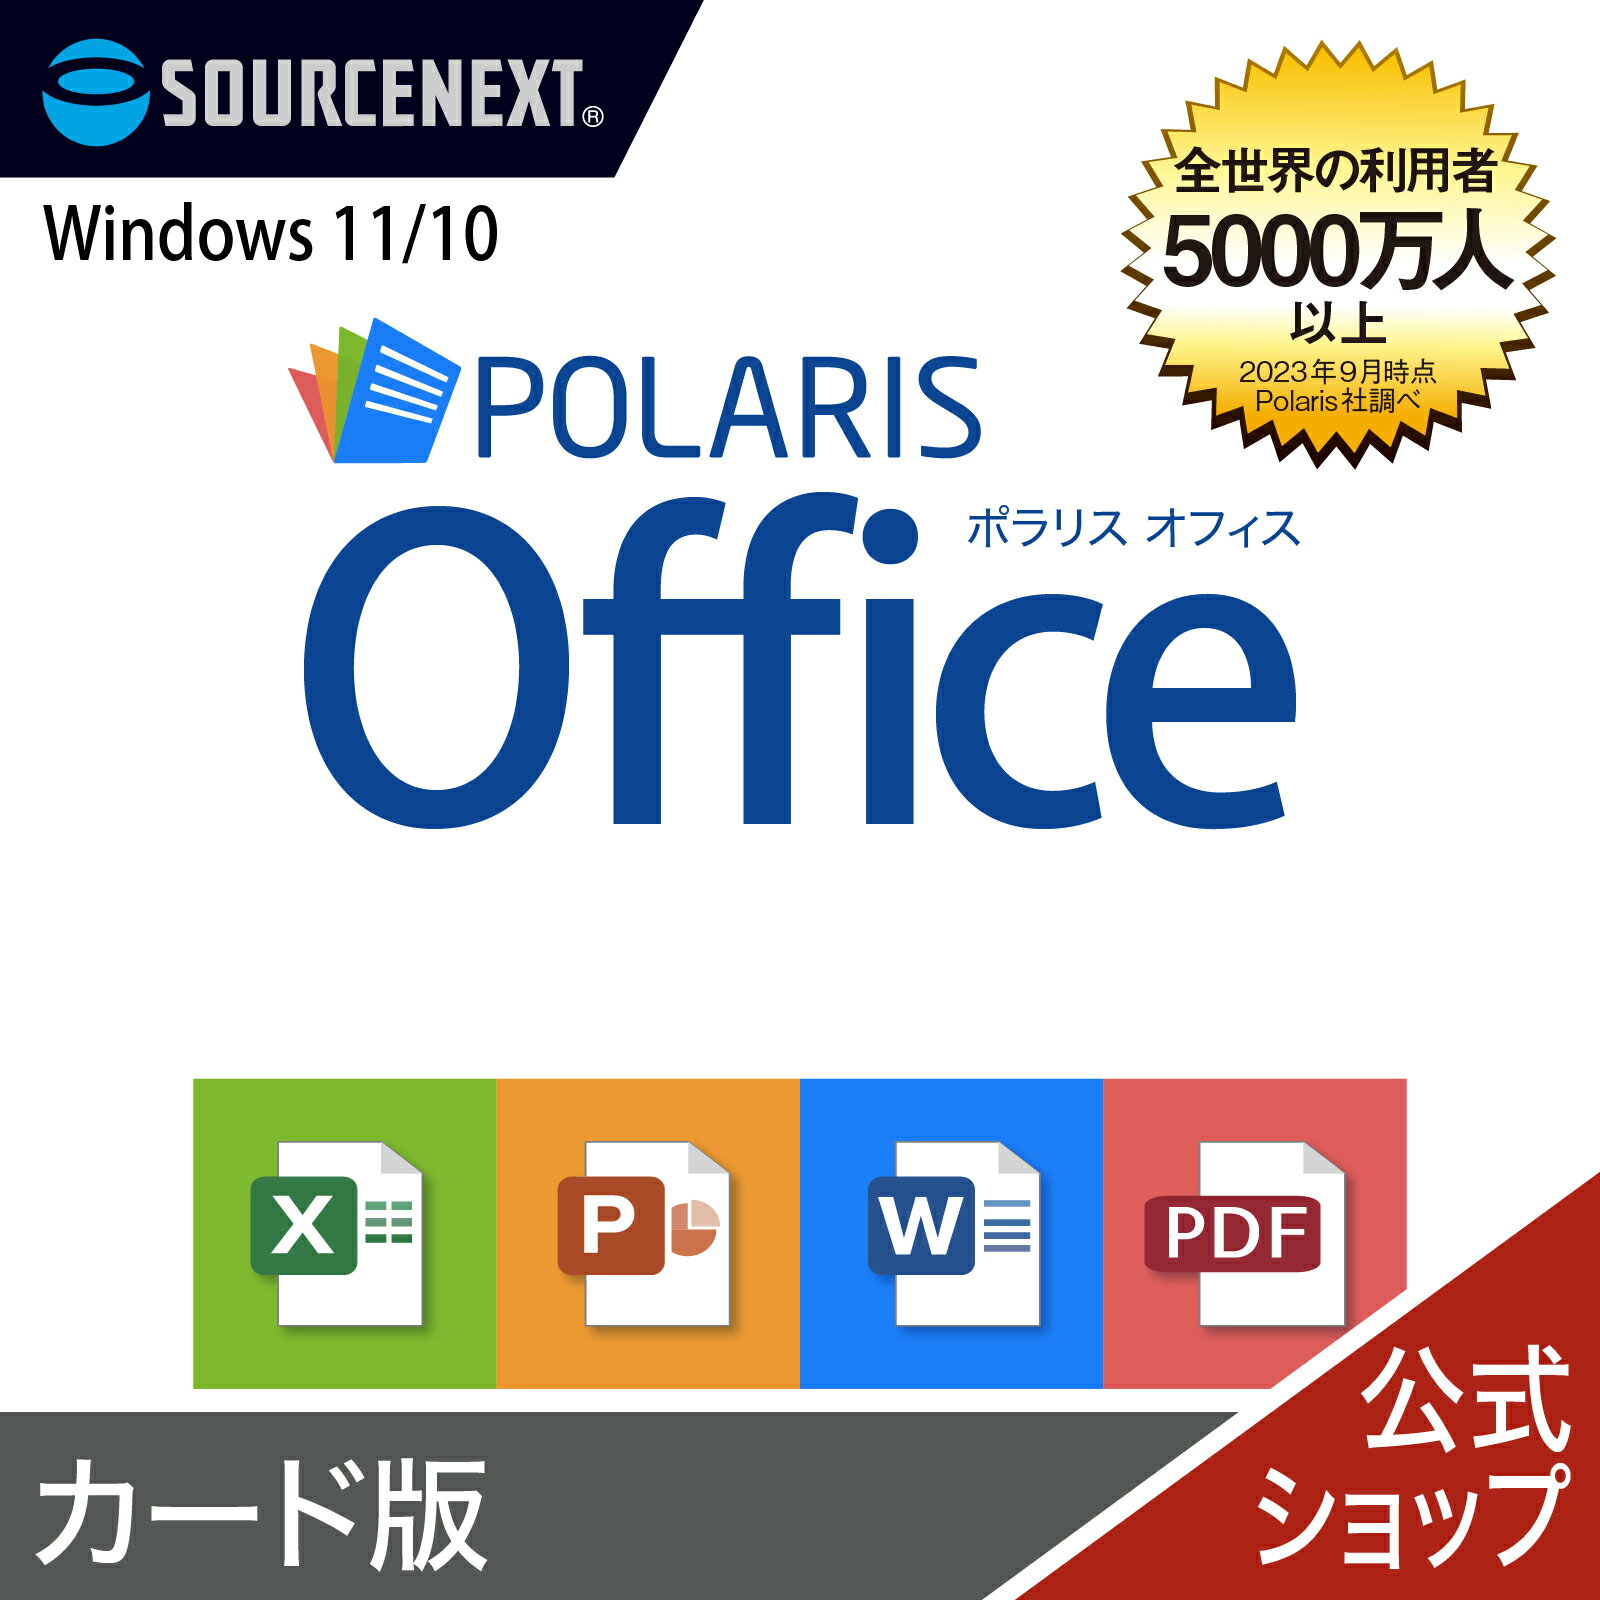 Polaris Office [Windowsp][ItBX\tg] |X Microsoft Office ItBX ݊ Excel PowerPoint Word p[|Cg GNZ\tg [h